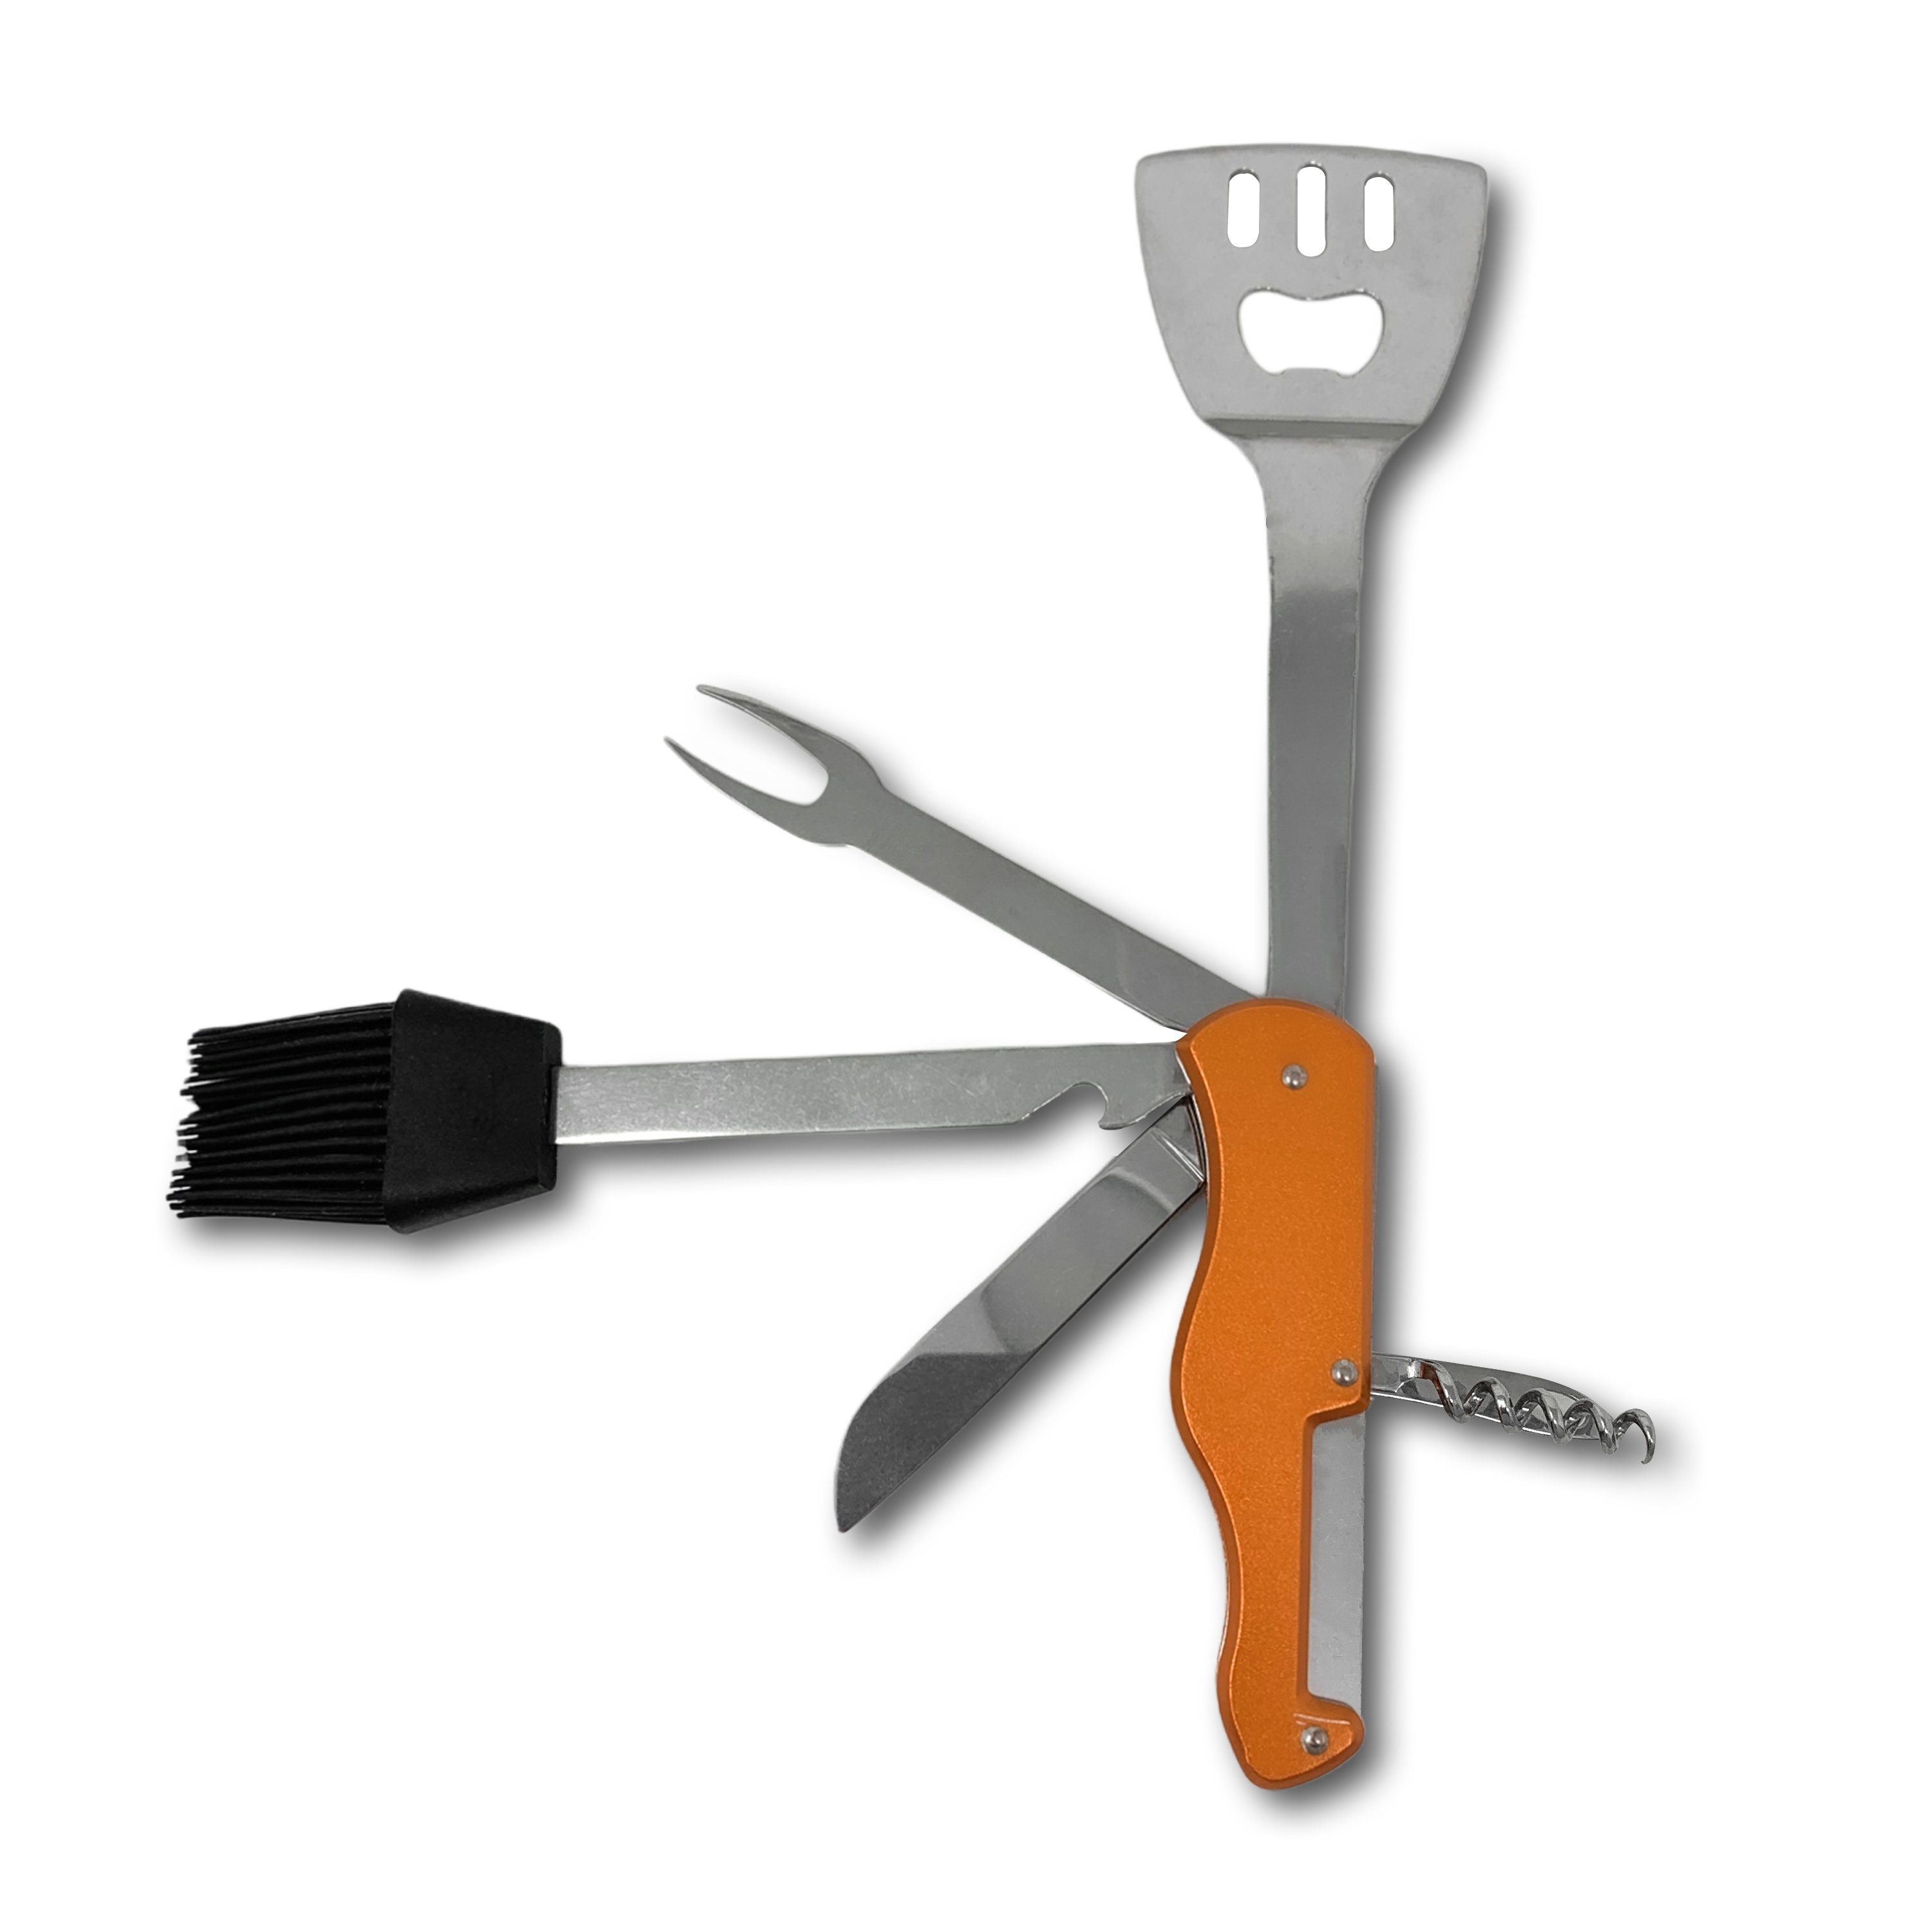 H-basics Multitool Multifunktions Küchenwerkzeug - Taschenwerkzeug, Multitool, Outdoor, Vatertag für Camping, Wandern Orange